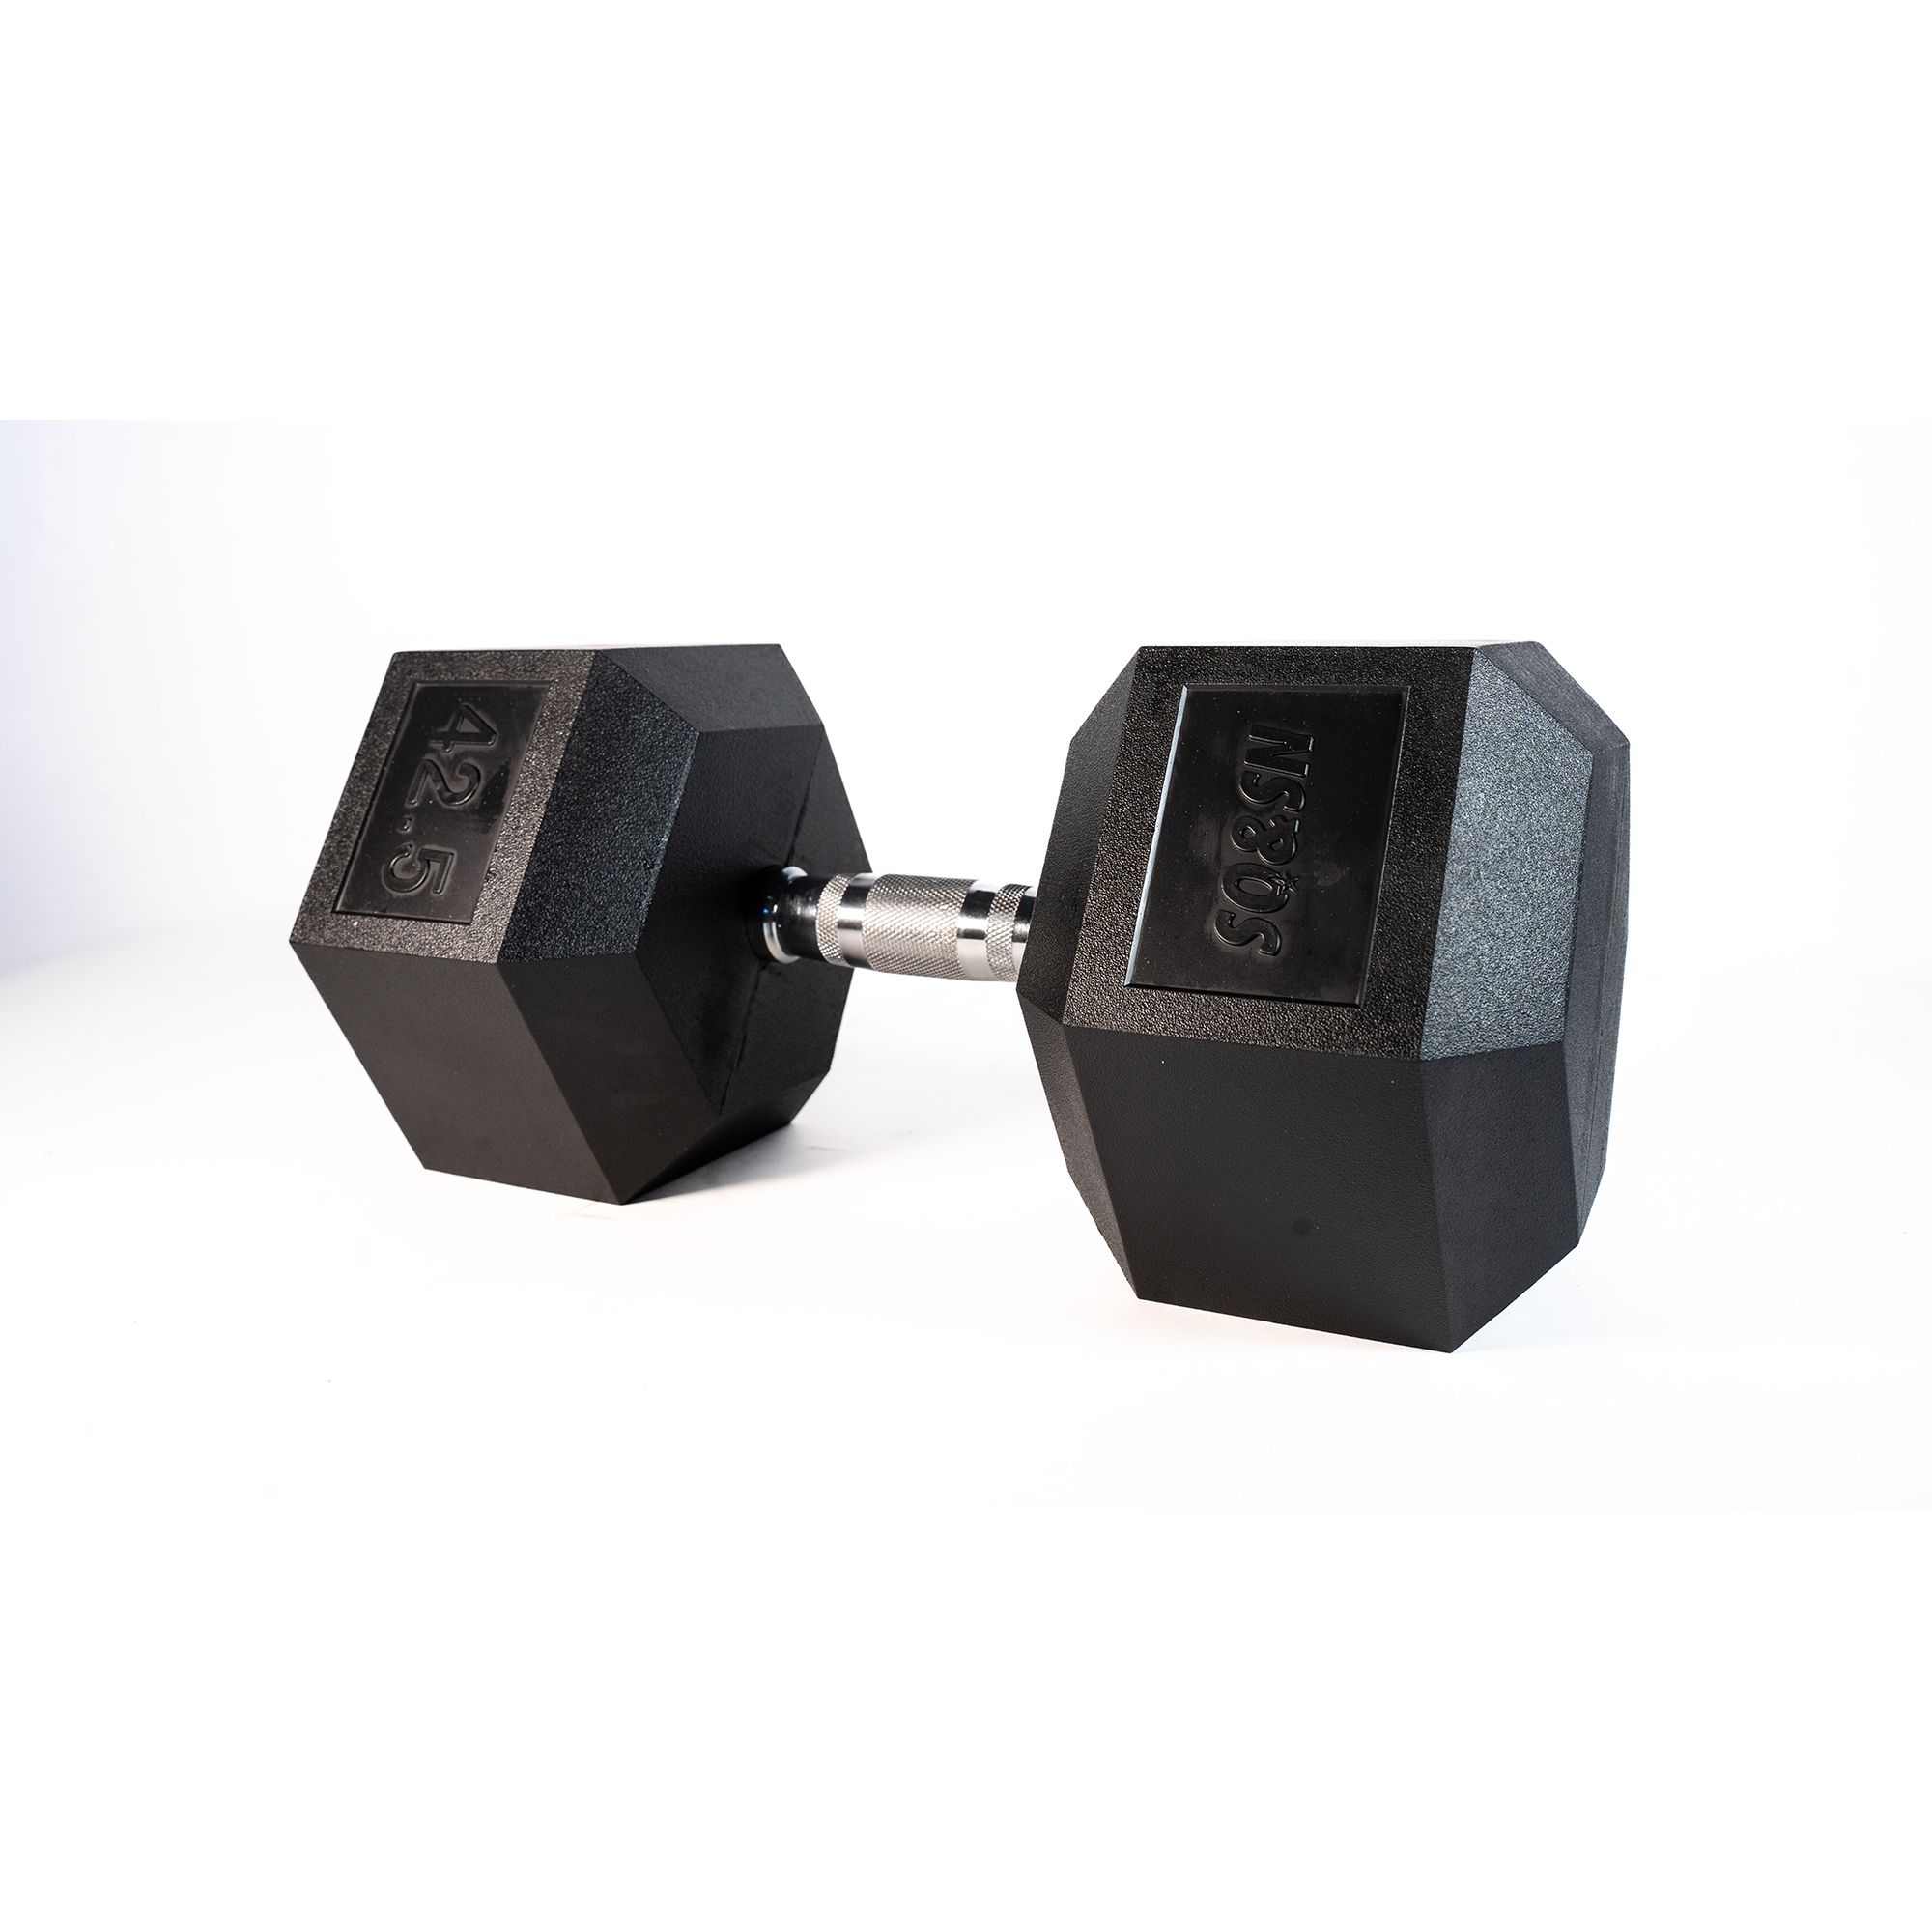 Brug SQ&SN Hexagon Håndvægt (42,5 kg) med forkromet greb. Udstyr til crossfit træning, styrketræning og funktionel træning til en forbedret oplevelse